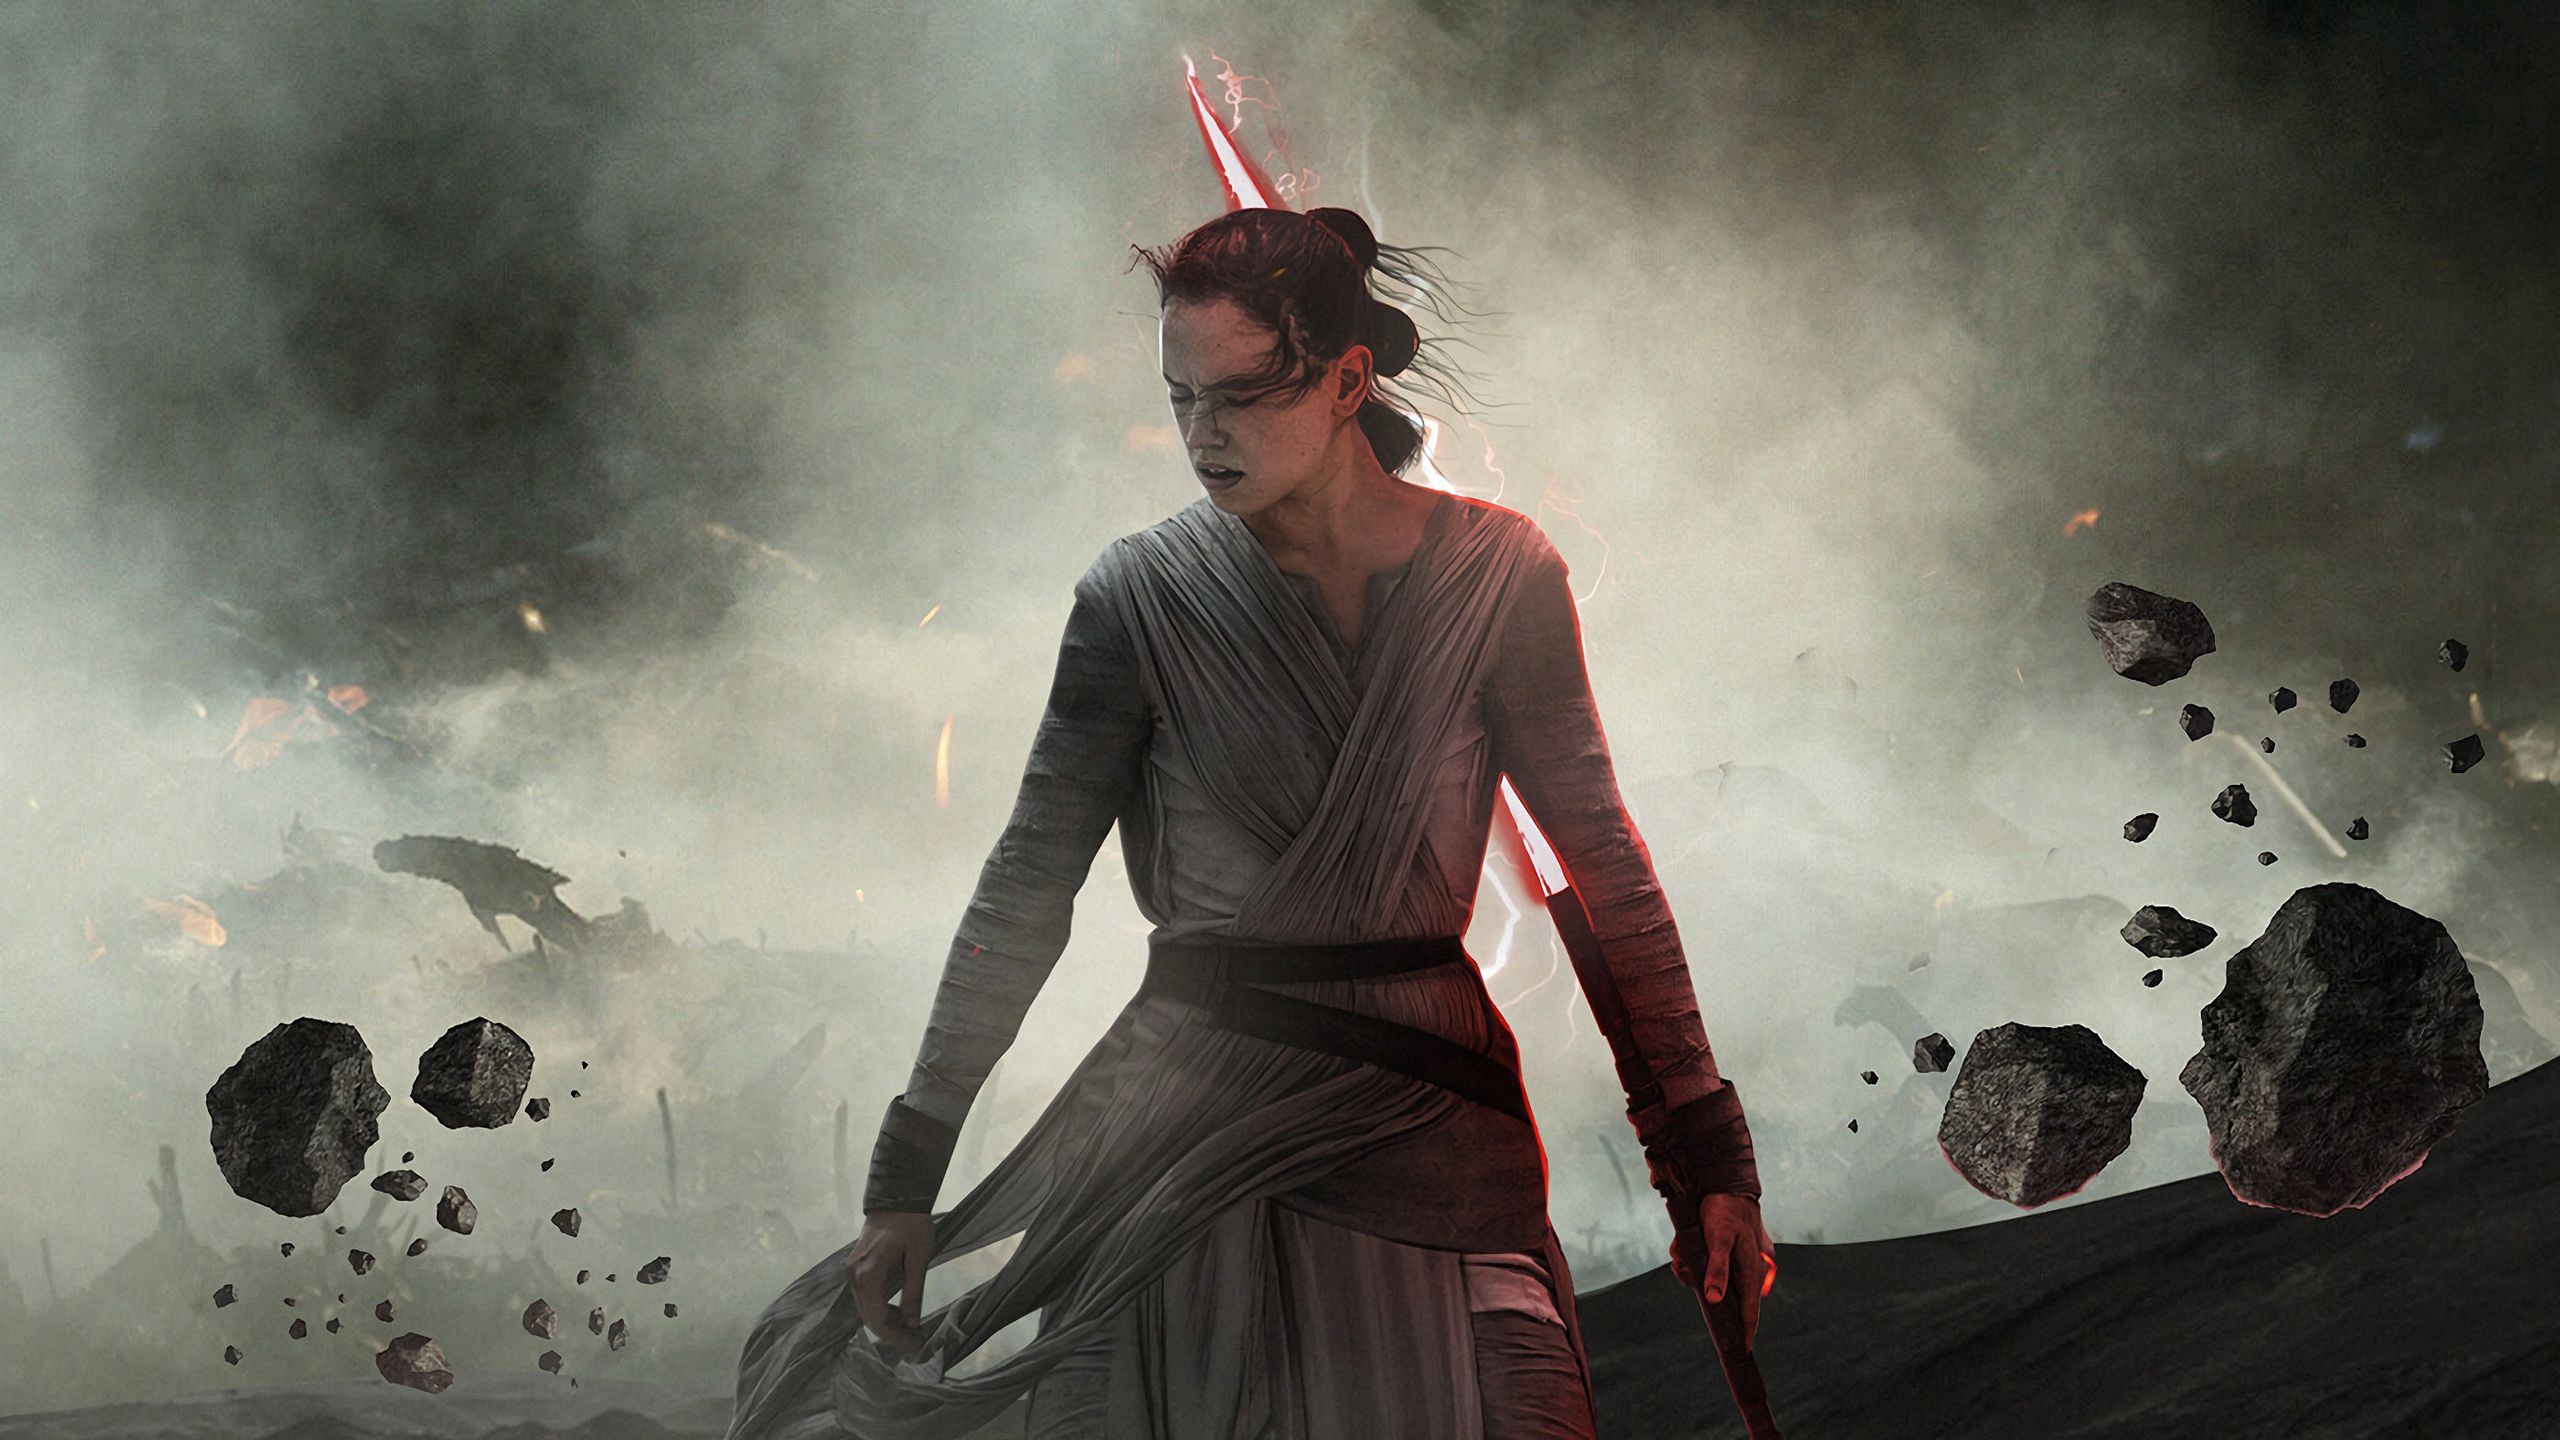 Dark Rey Star Wars The Rise Of Skywalker, HD Movies, 4k Wallpapers, Image, ...